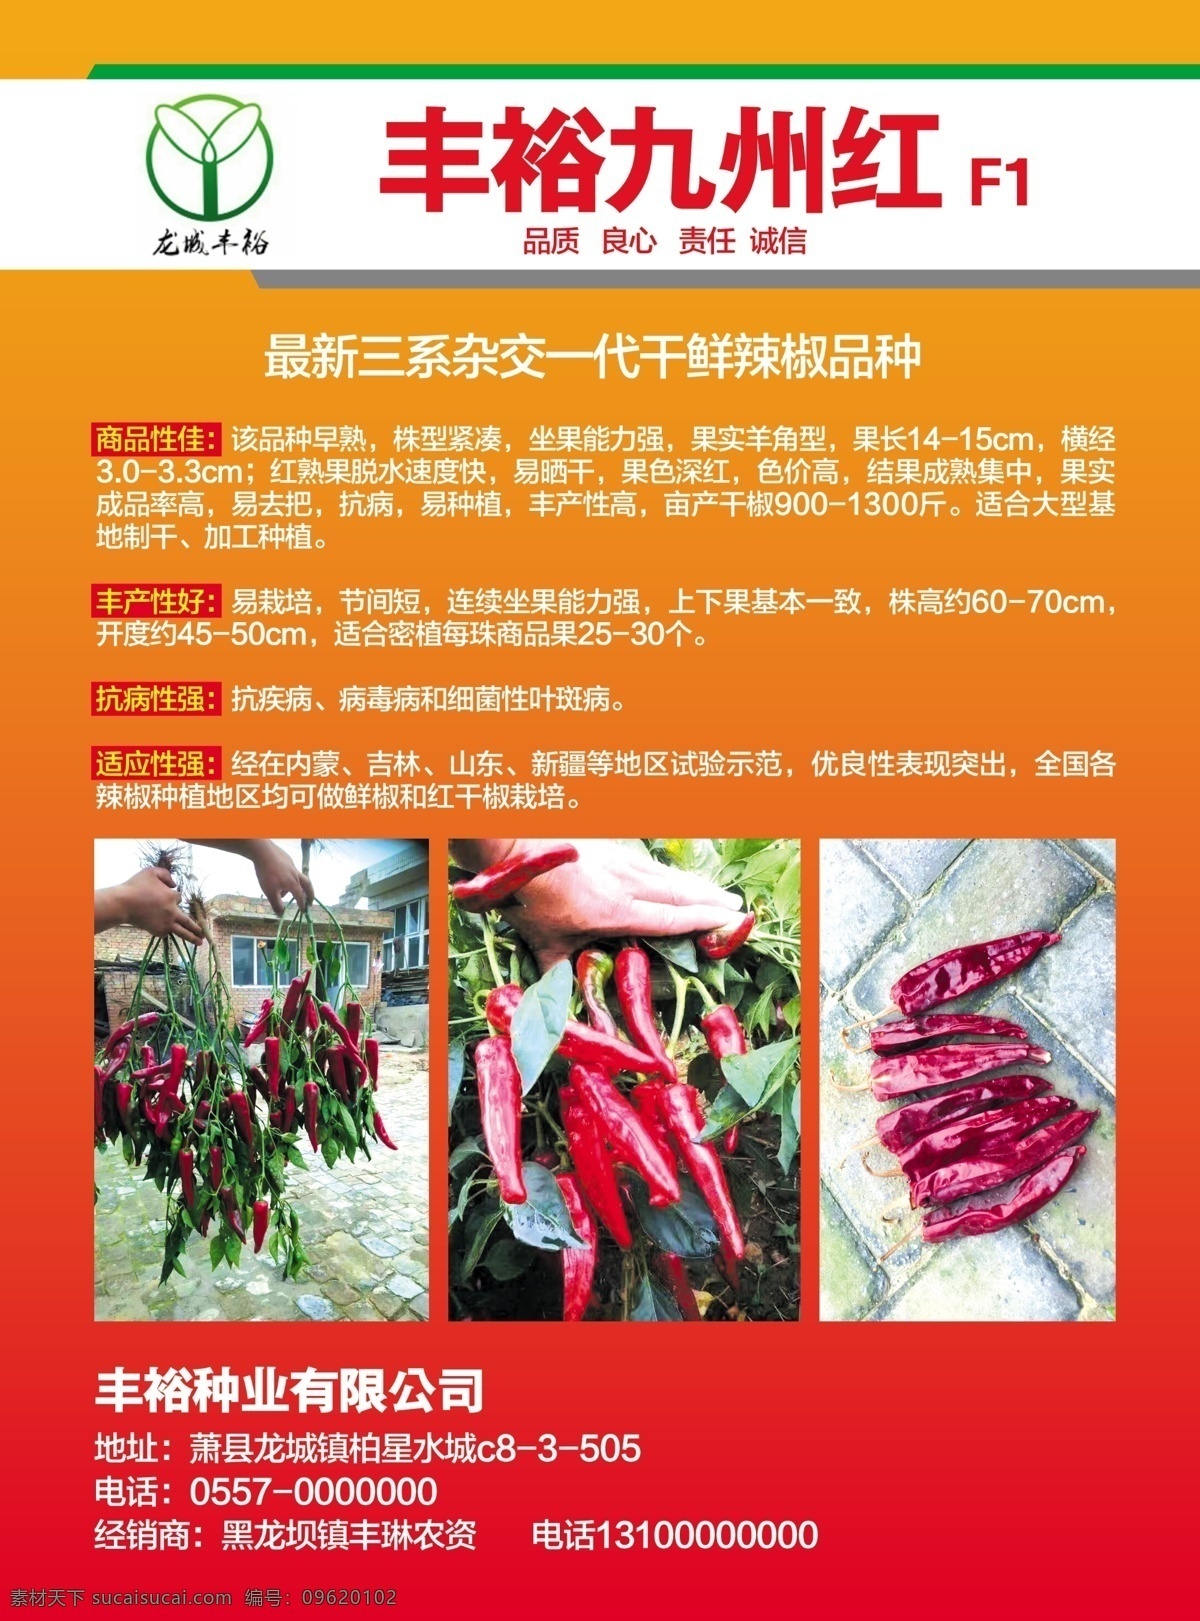 丰裕九州红 宣传单 红色彩页 辣椒宣传单 红色背景 分层